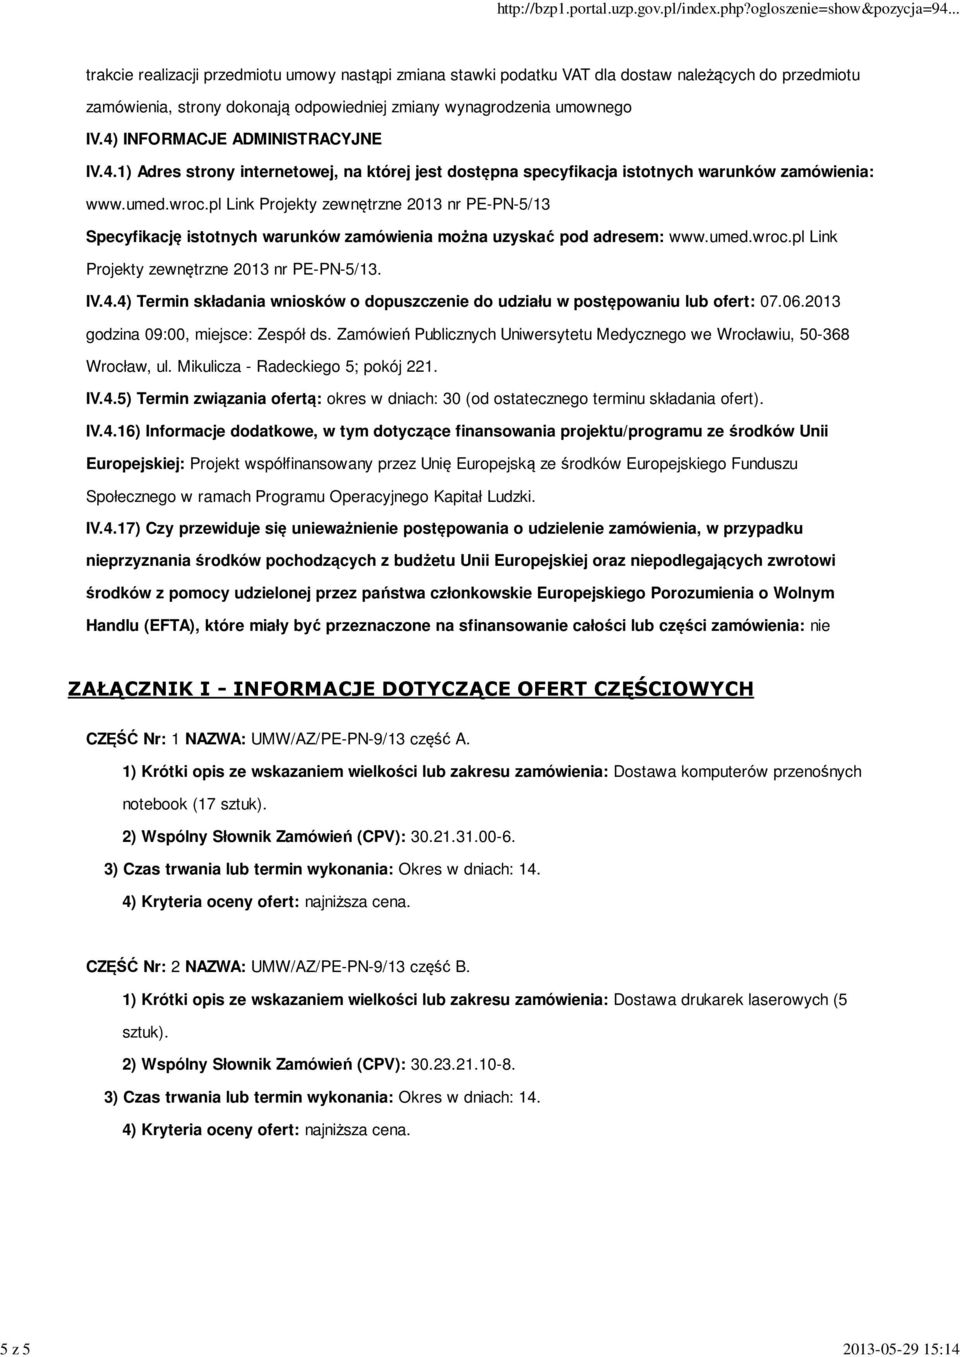 pl Link Projekty zewnętrzne 2013 nr PE-PN-5/13 Specyfikację istotnych warunków zamówienia można uzyskać pod adresem: www.umed.wroc.pl Link Projekty zewnętrzne 2013 nr PE-PN-5/13. IV.4.